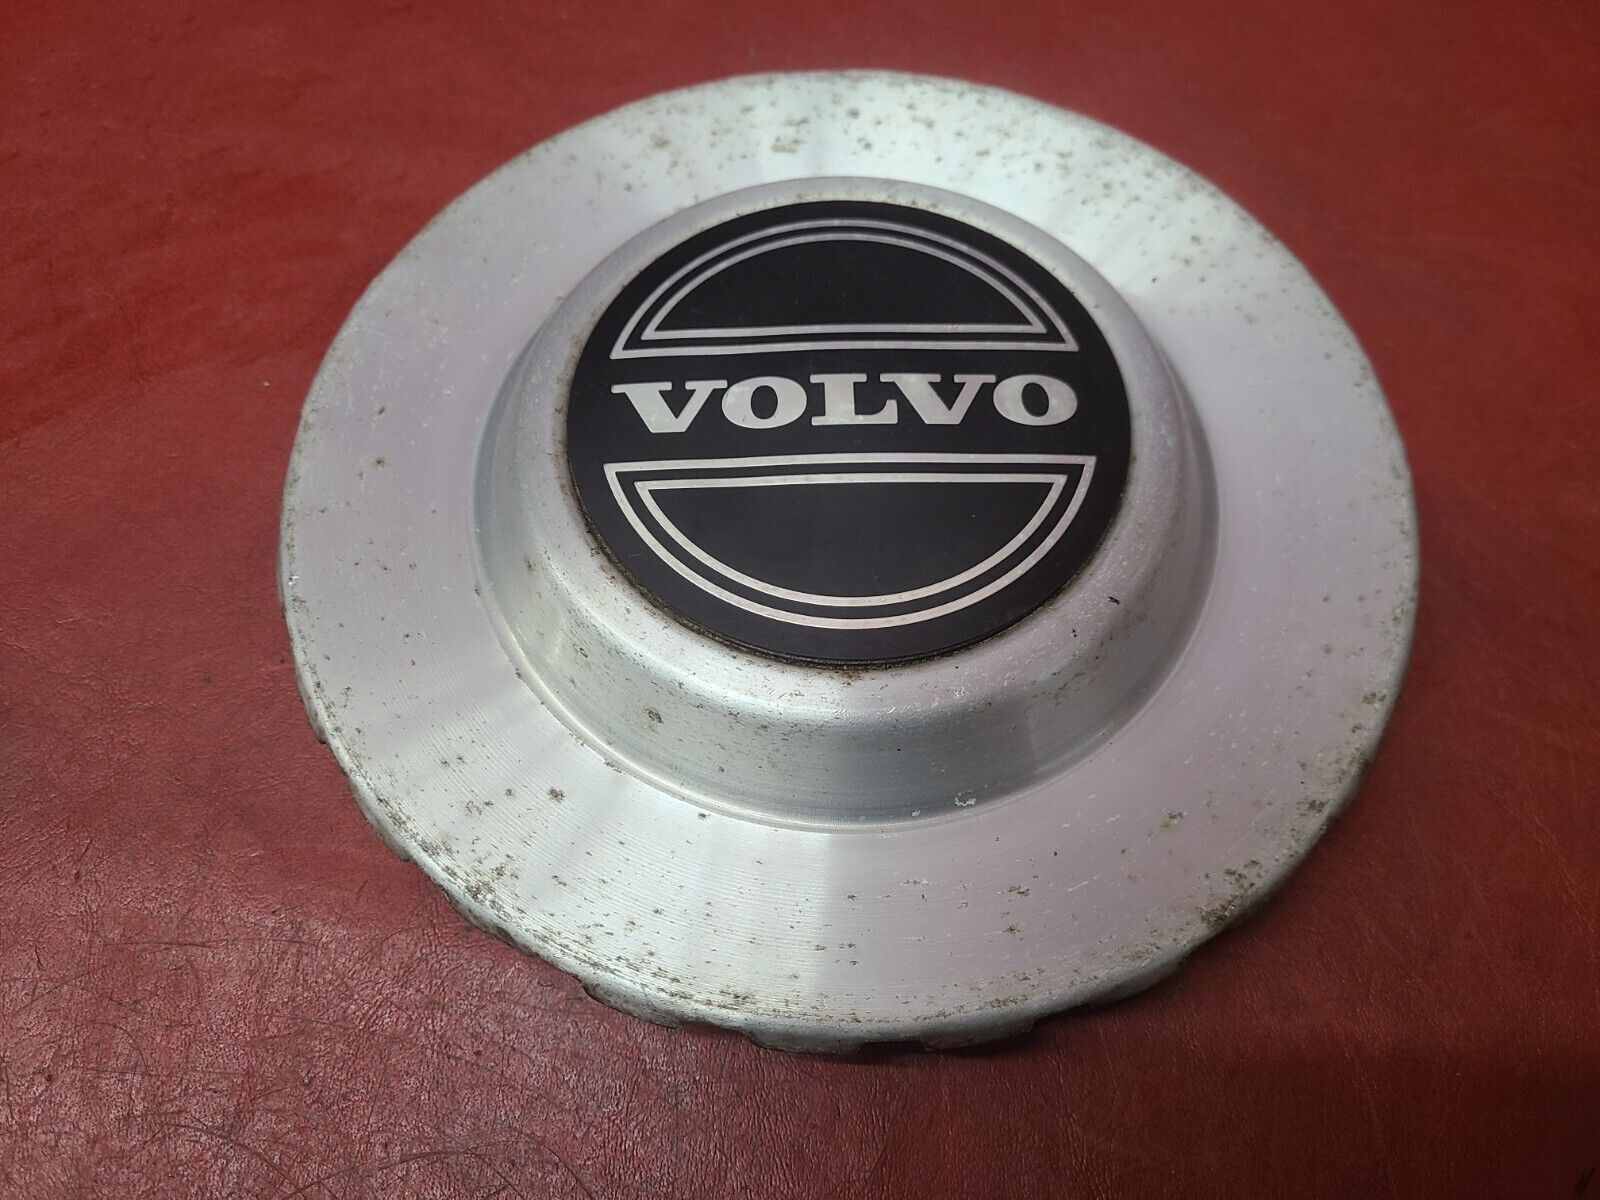 Volvo OEM 1980-1985 240 DL Chrome Center Cap Wheel Hub Cover